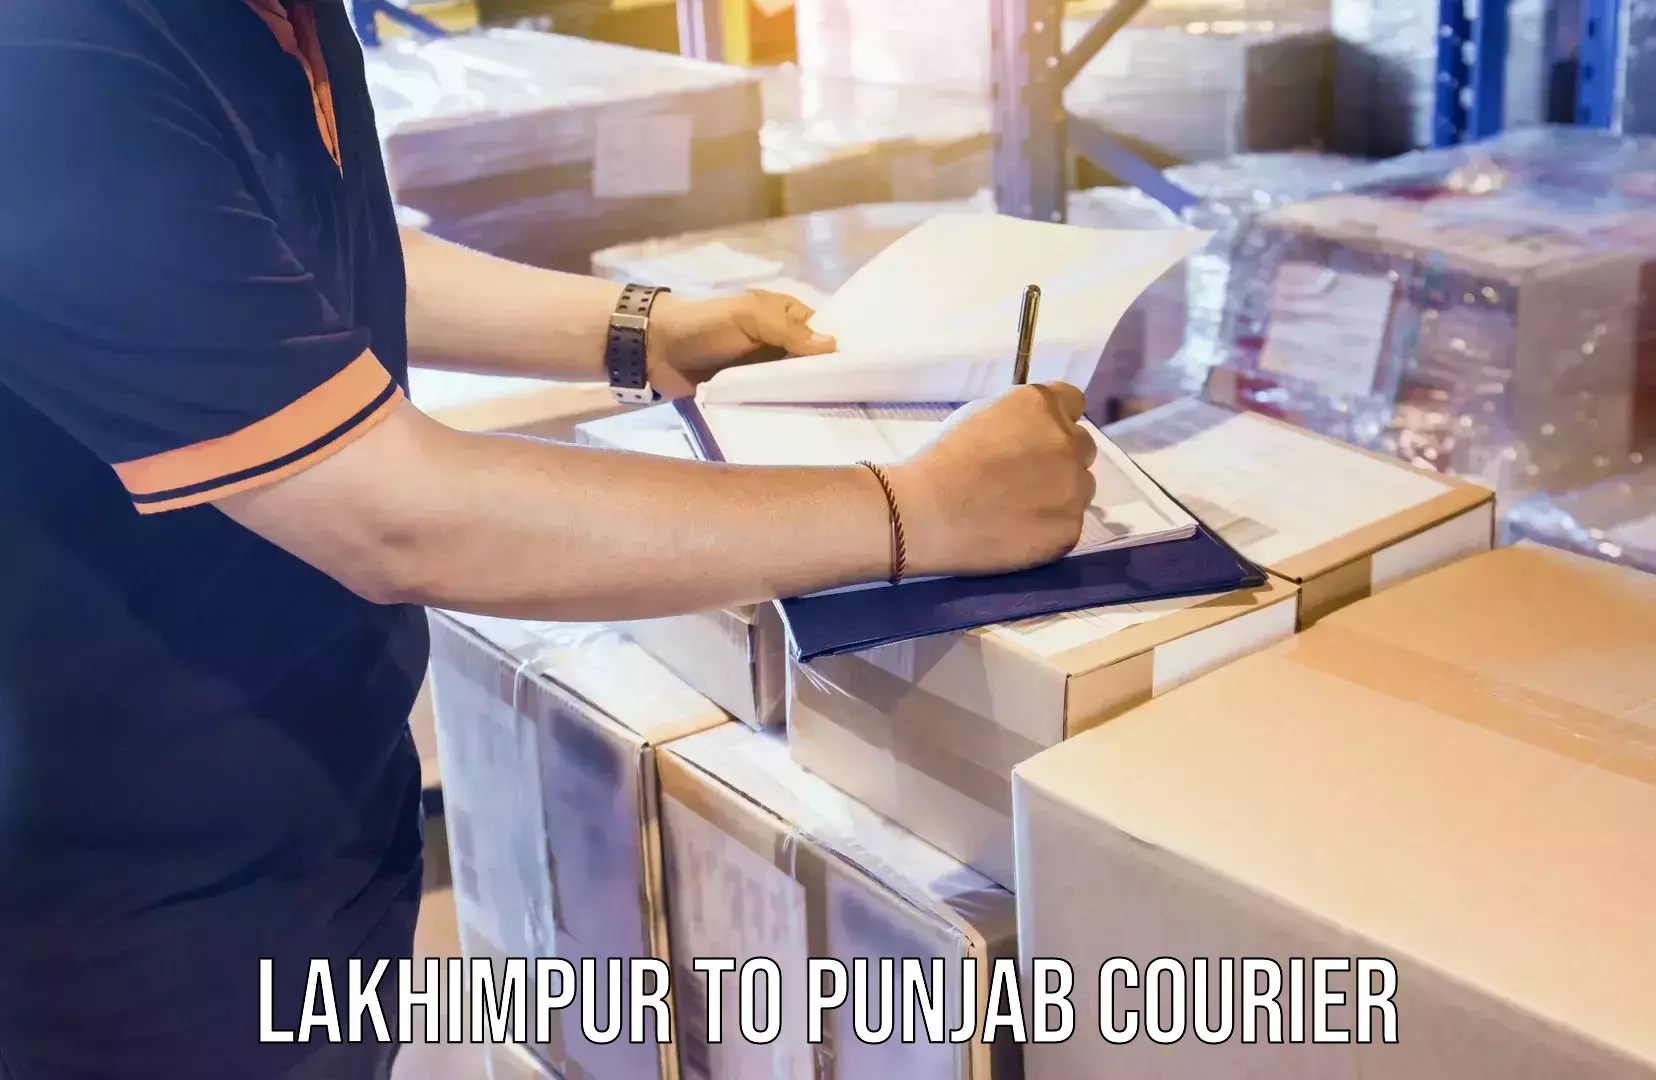 Furniture transport solutions Lakhimpur to Punjab